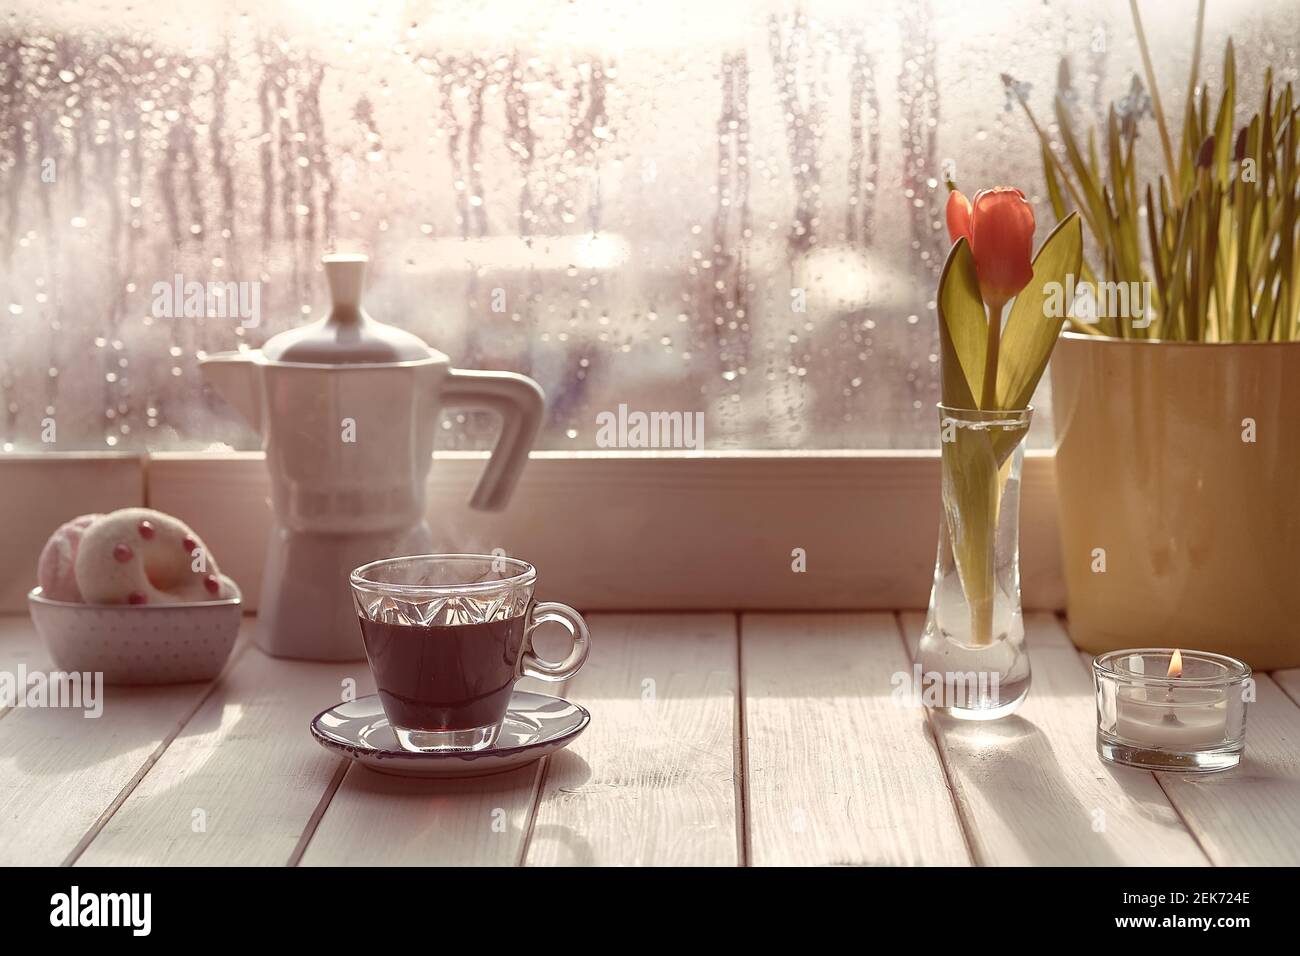 Café oriental en la tradicional cafetera turca de cobre con flores en el alféizar de la ventana. Alféizar de madera con tulipanes de naranja y maceta de flores de jacinto Foto de stock